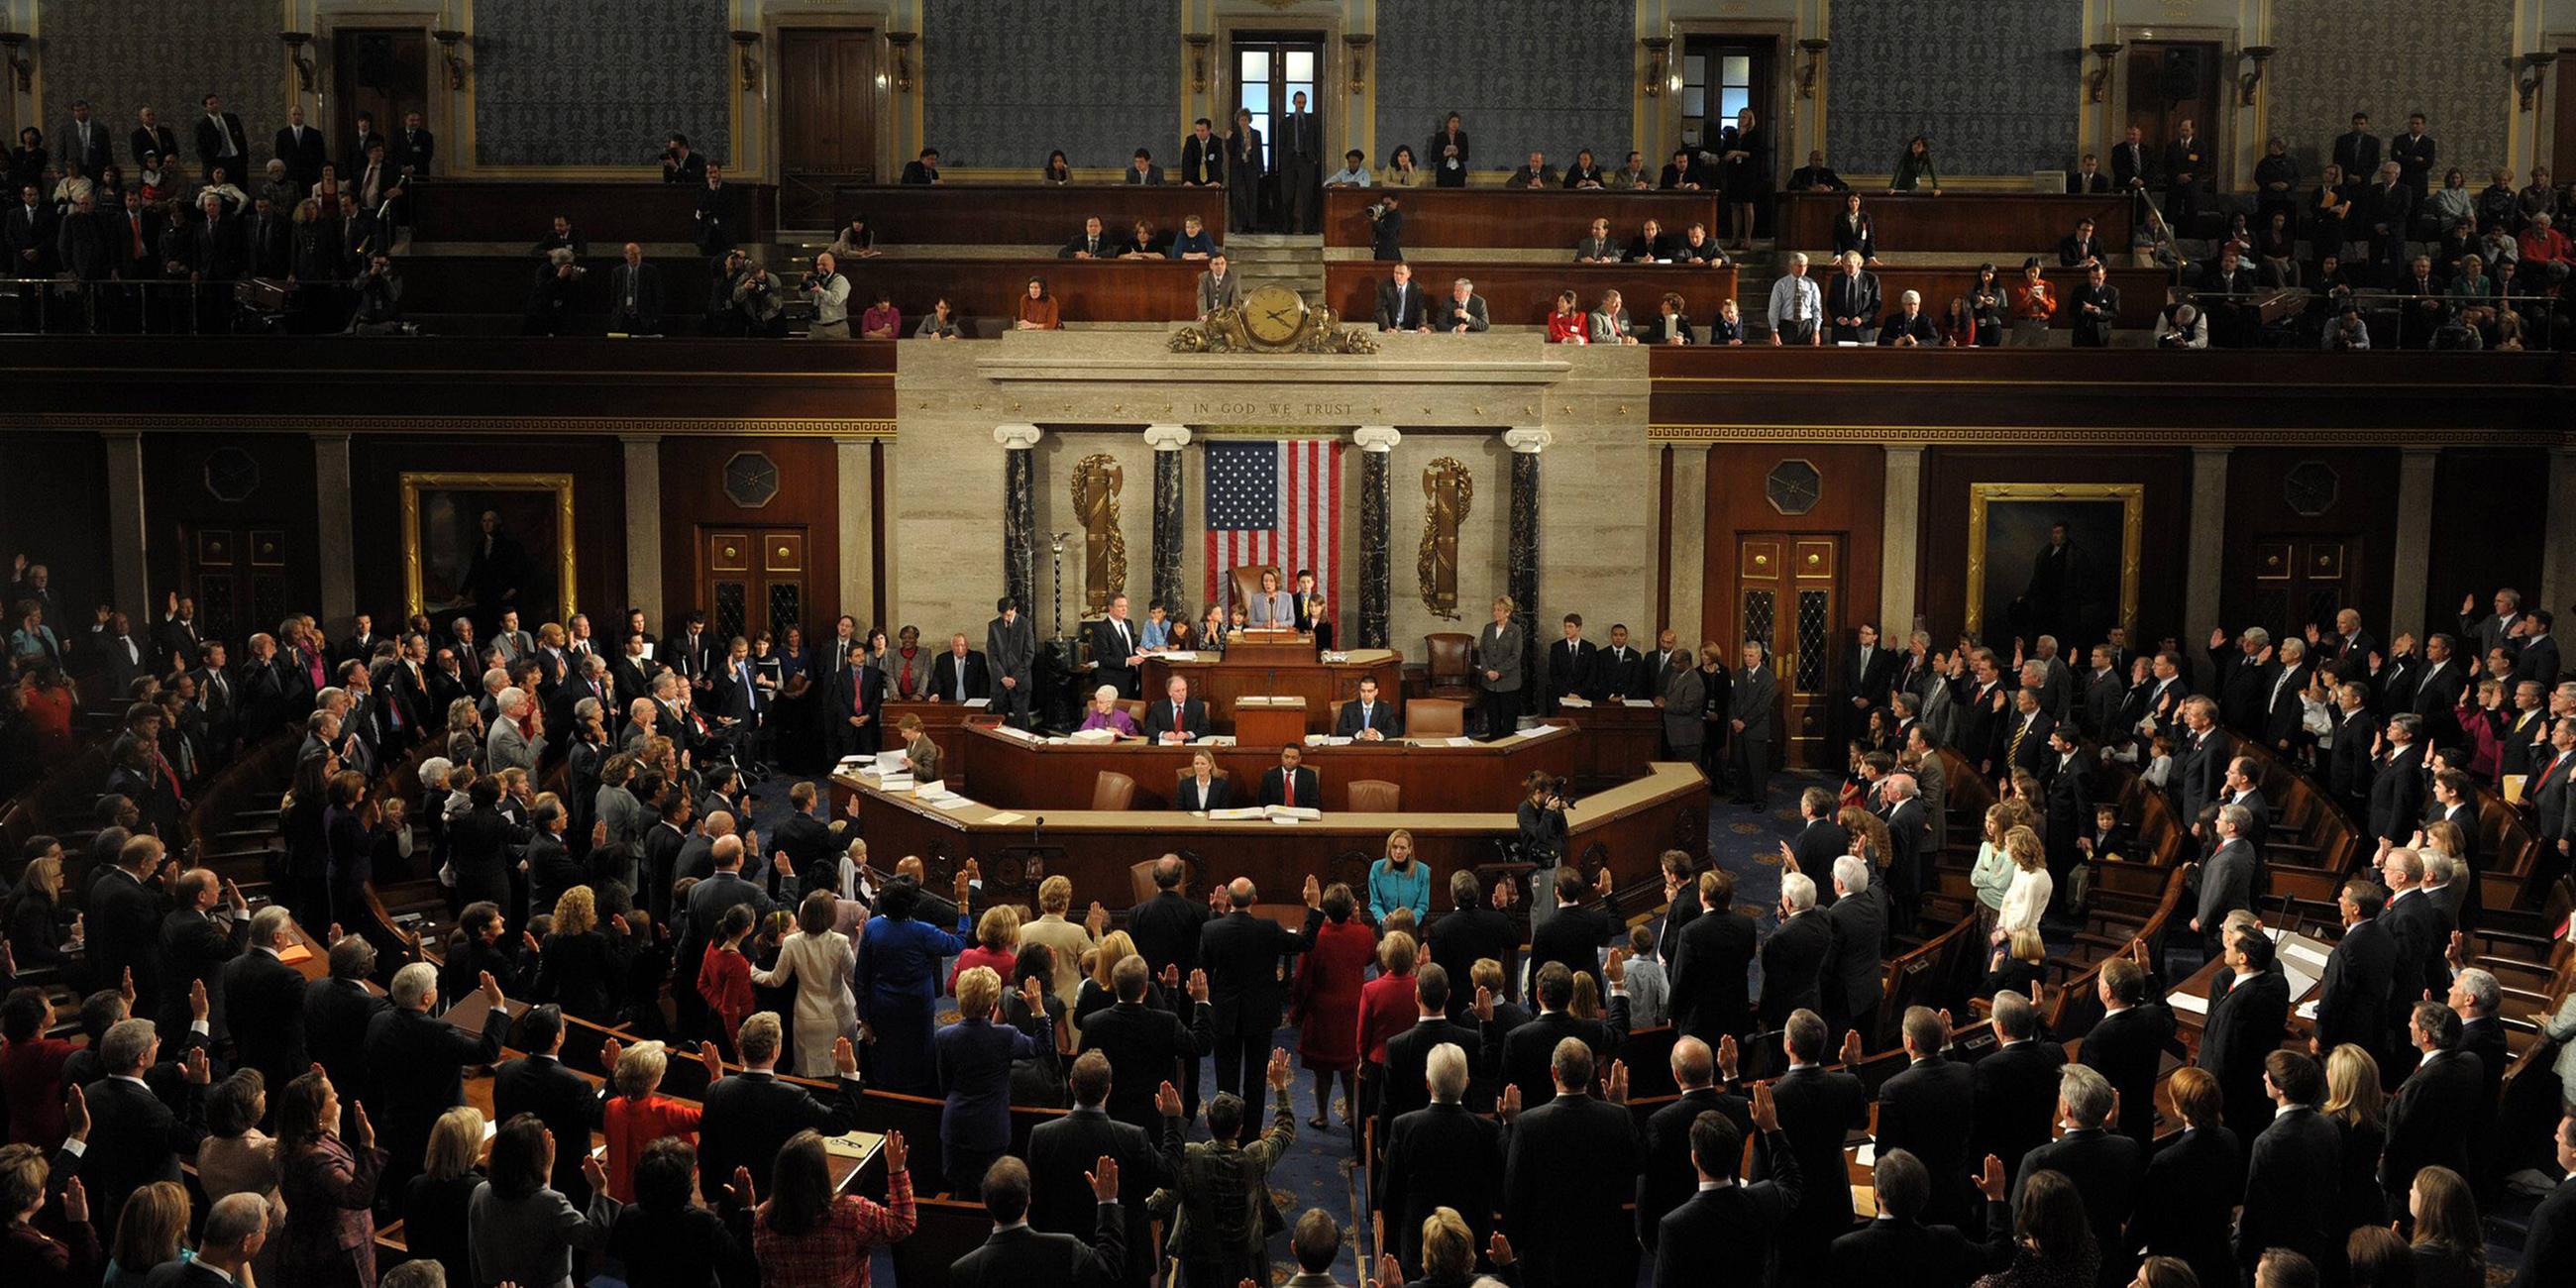 Archiv: Der Kongress in Washington von innen 